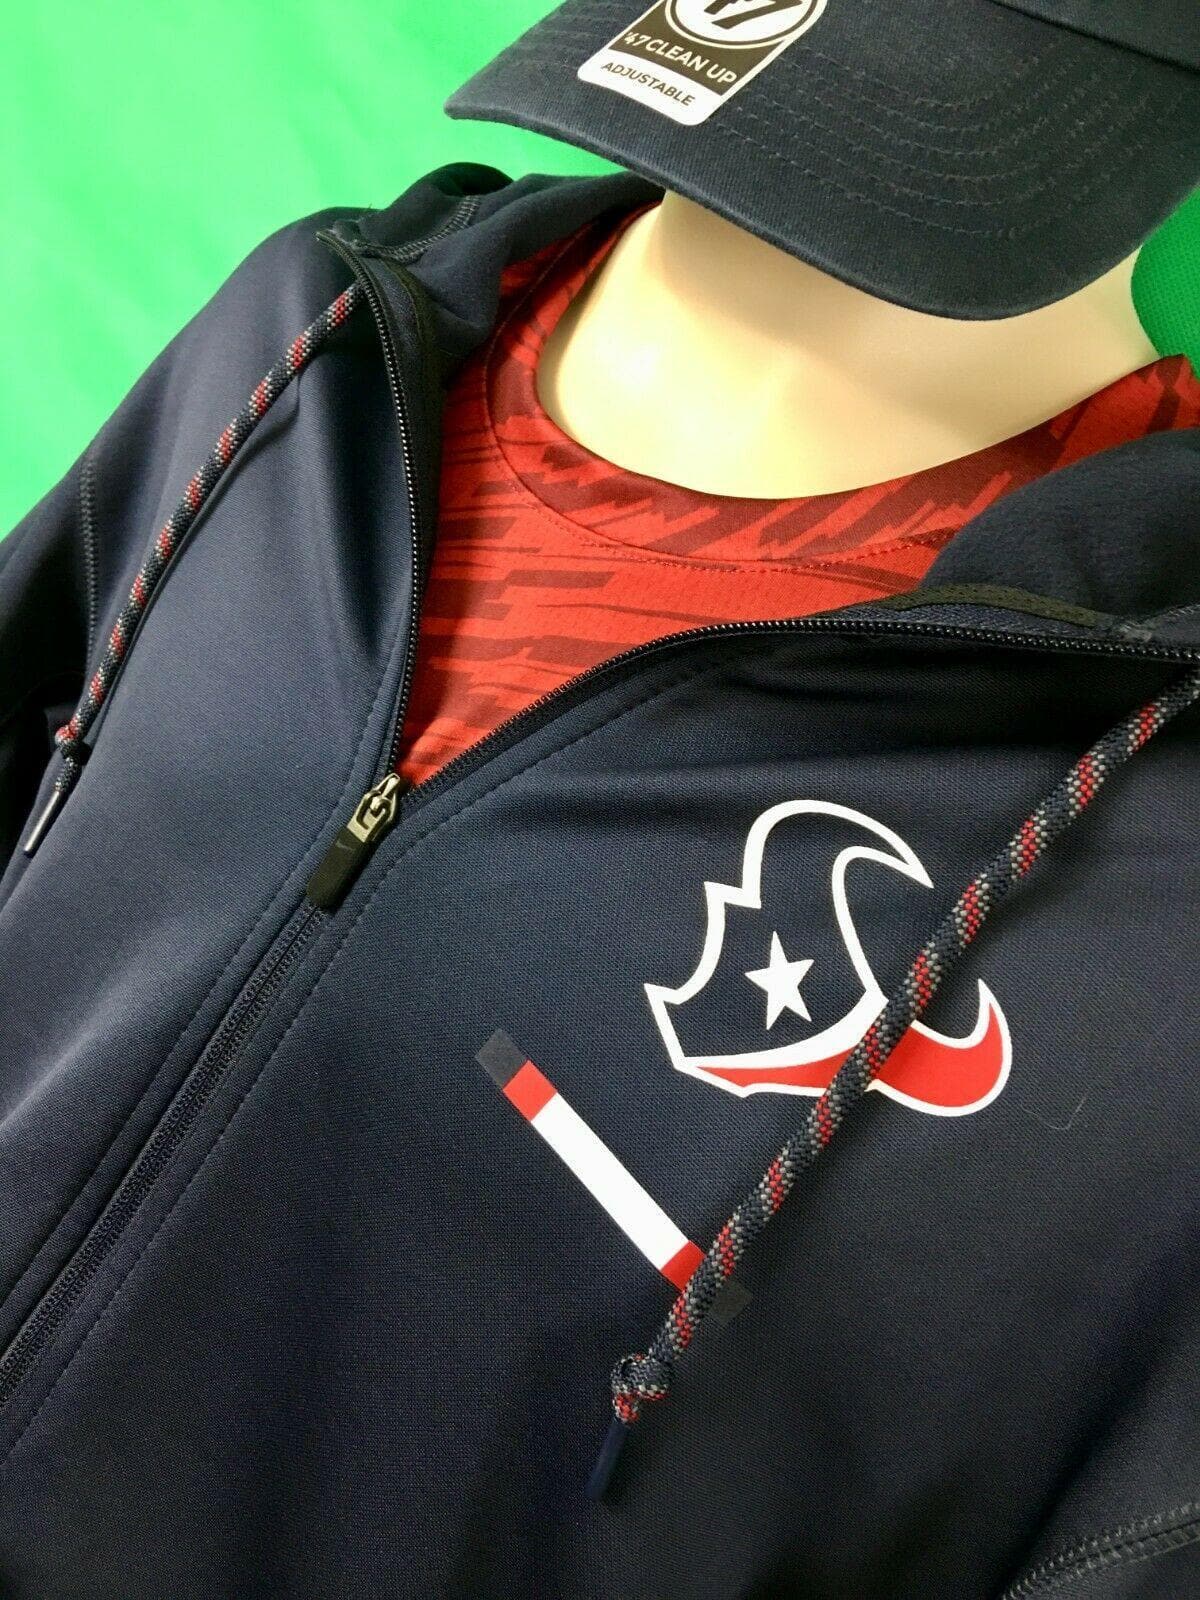 NFL Houston Texans Full Zip Jacket Men's Large NWT